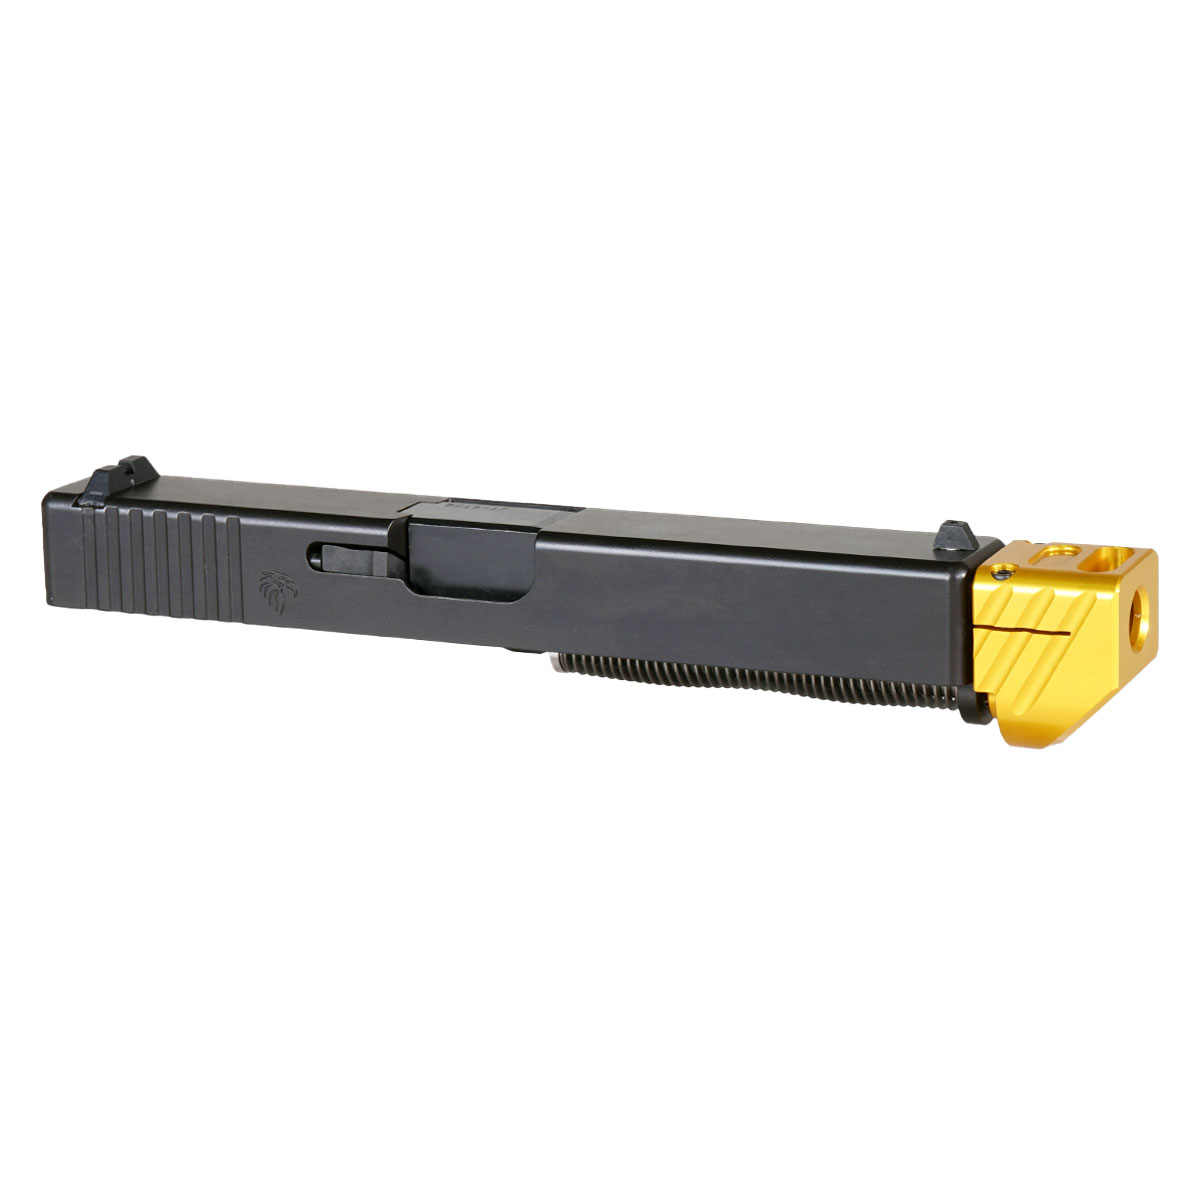 DD 'Boomerango V2 w/ Gold Compensator' 9mm Complete Slide Kit - Glock 17 Gen 1-3 Compatible